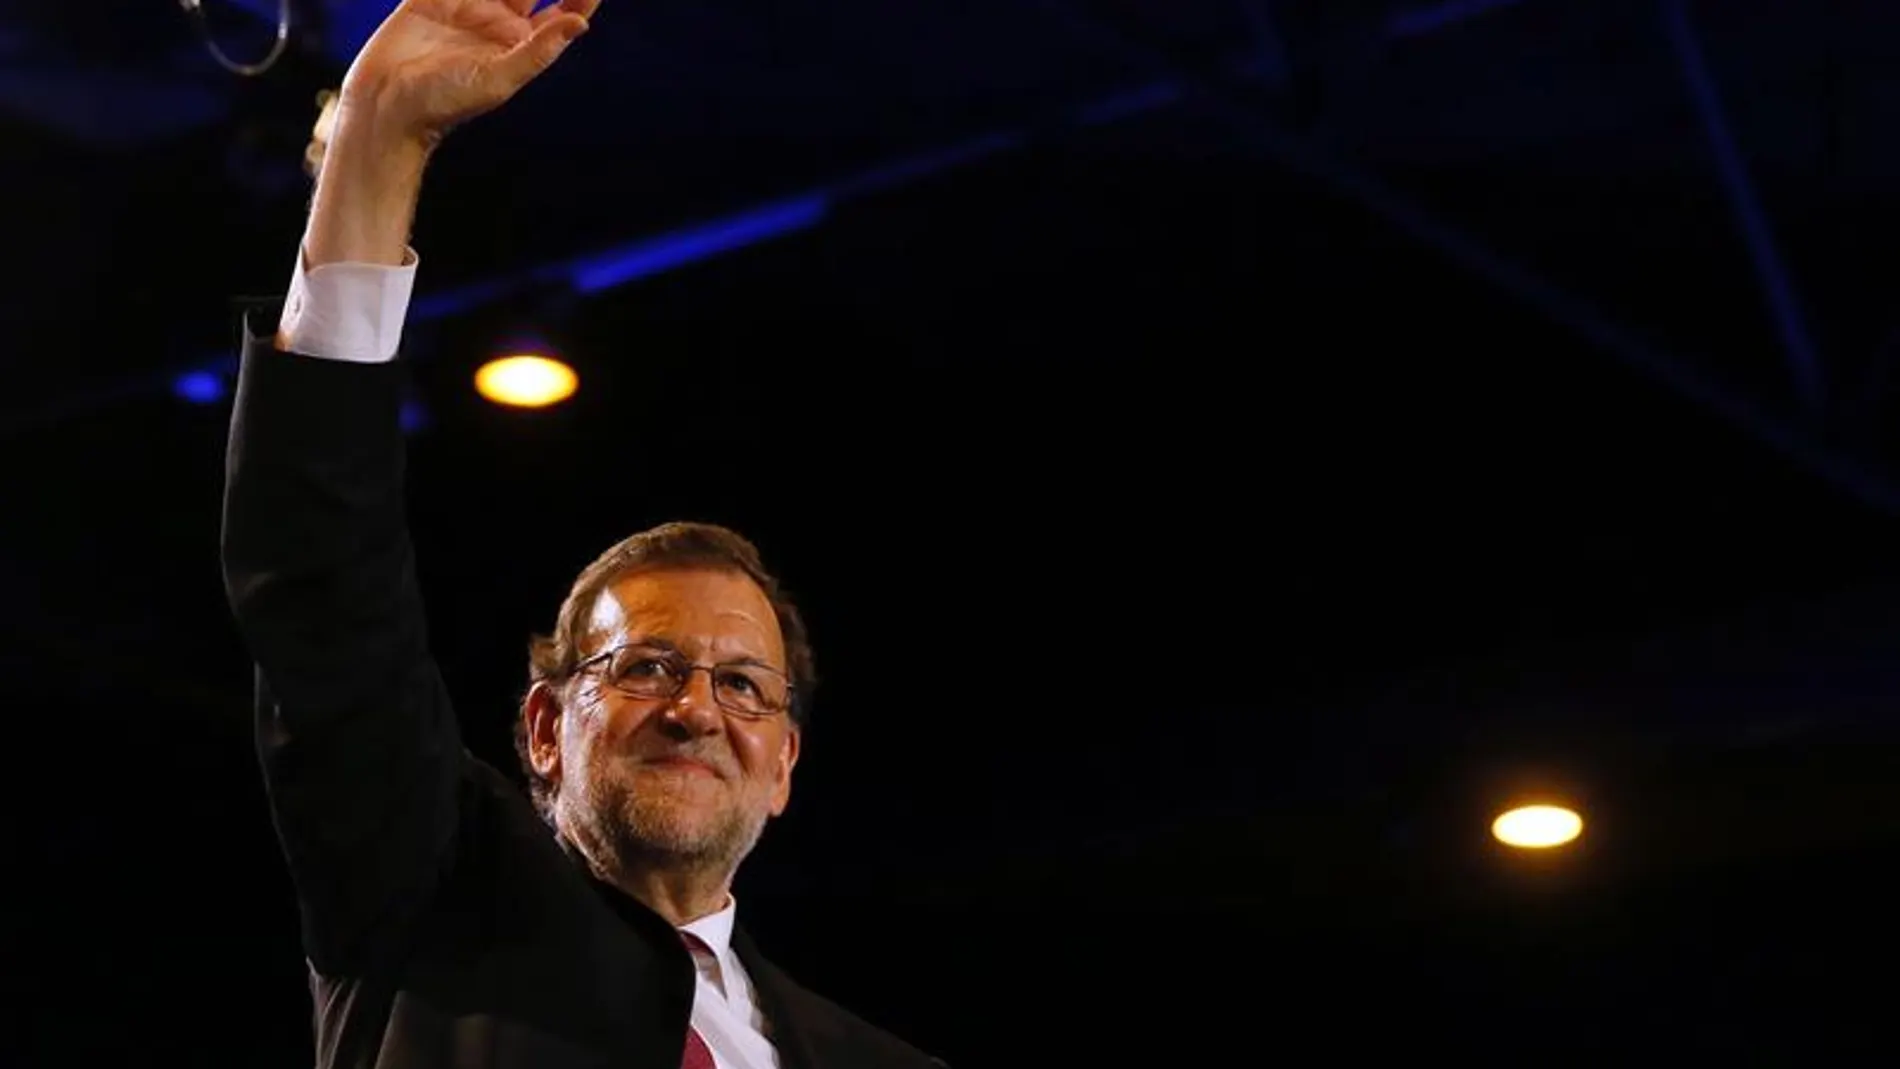 Rajoy saluda durante el acto electoral de cierre de campaña